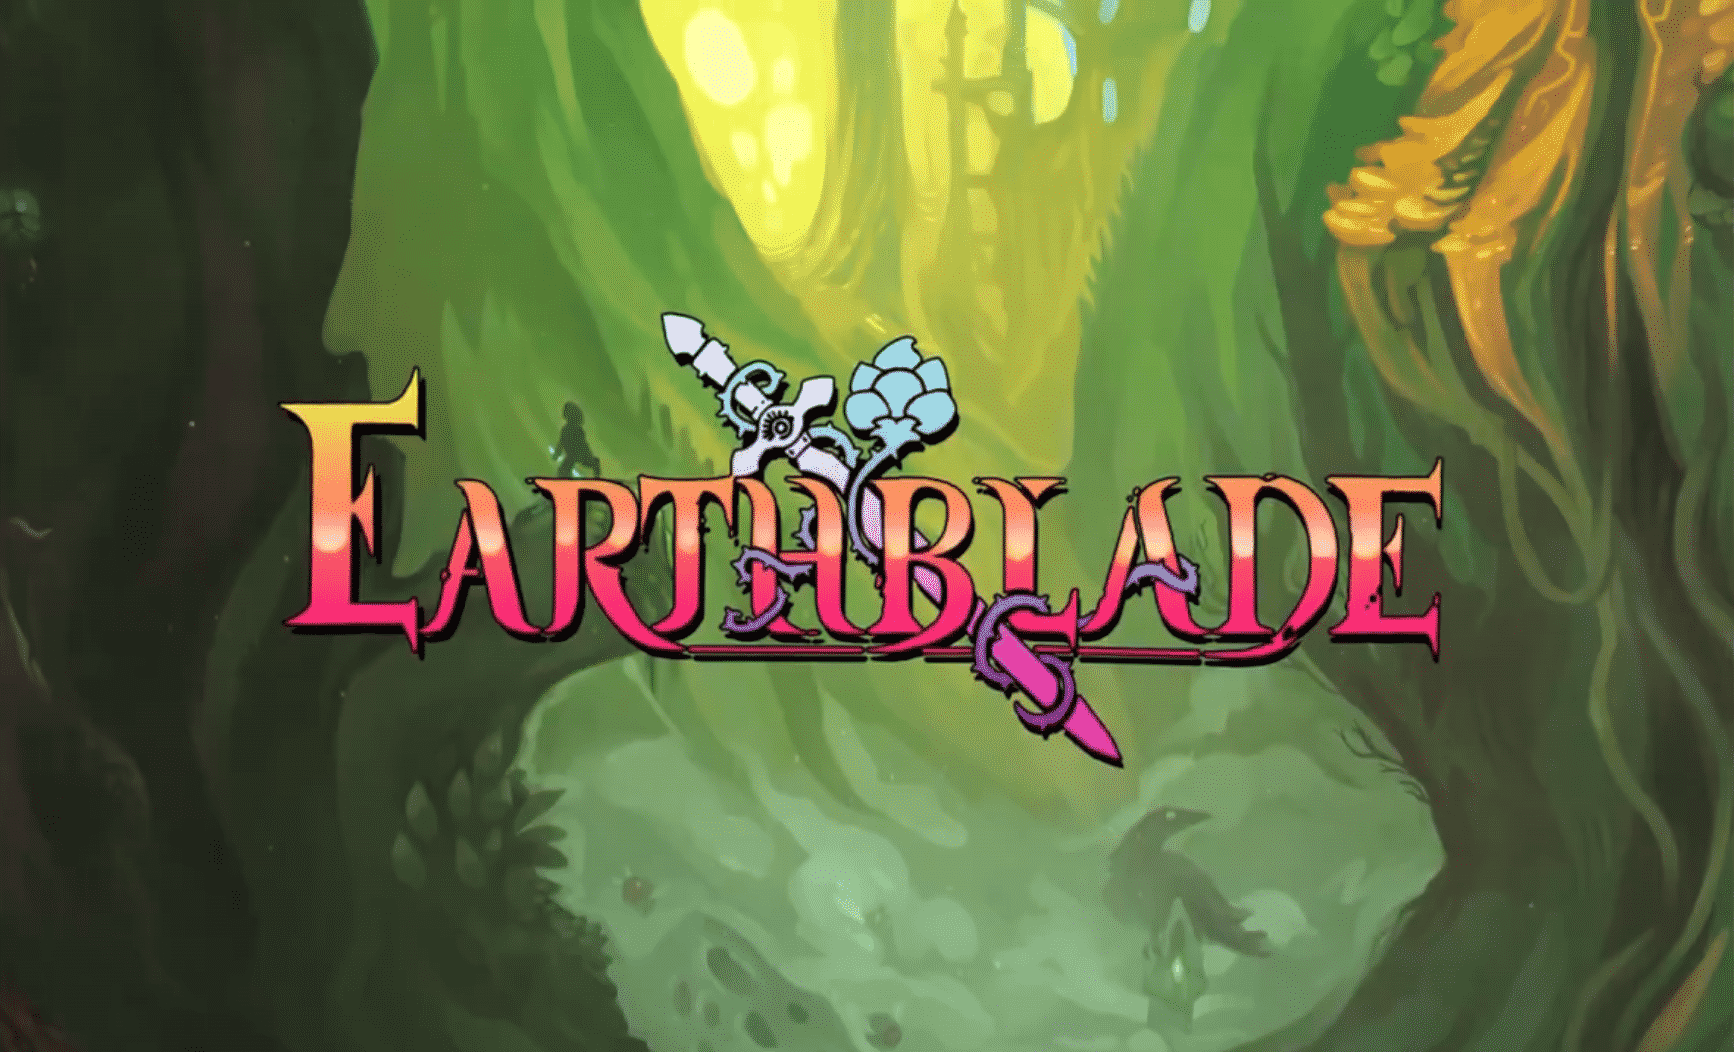 earthblade game